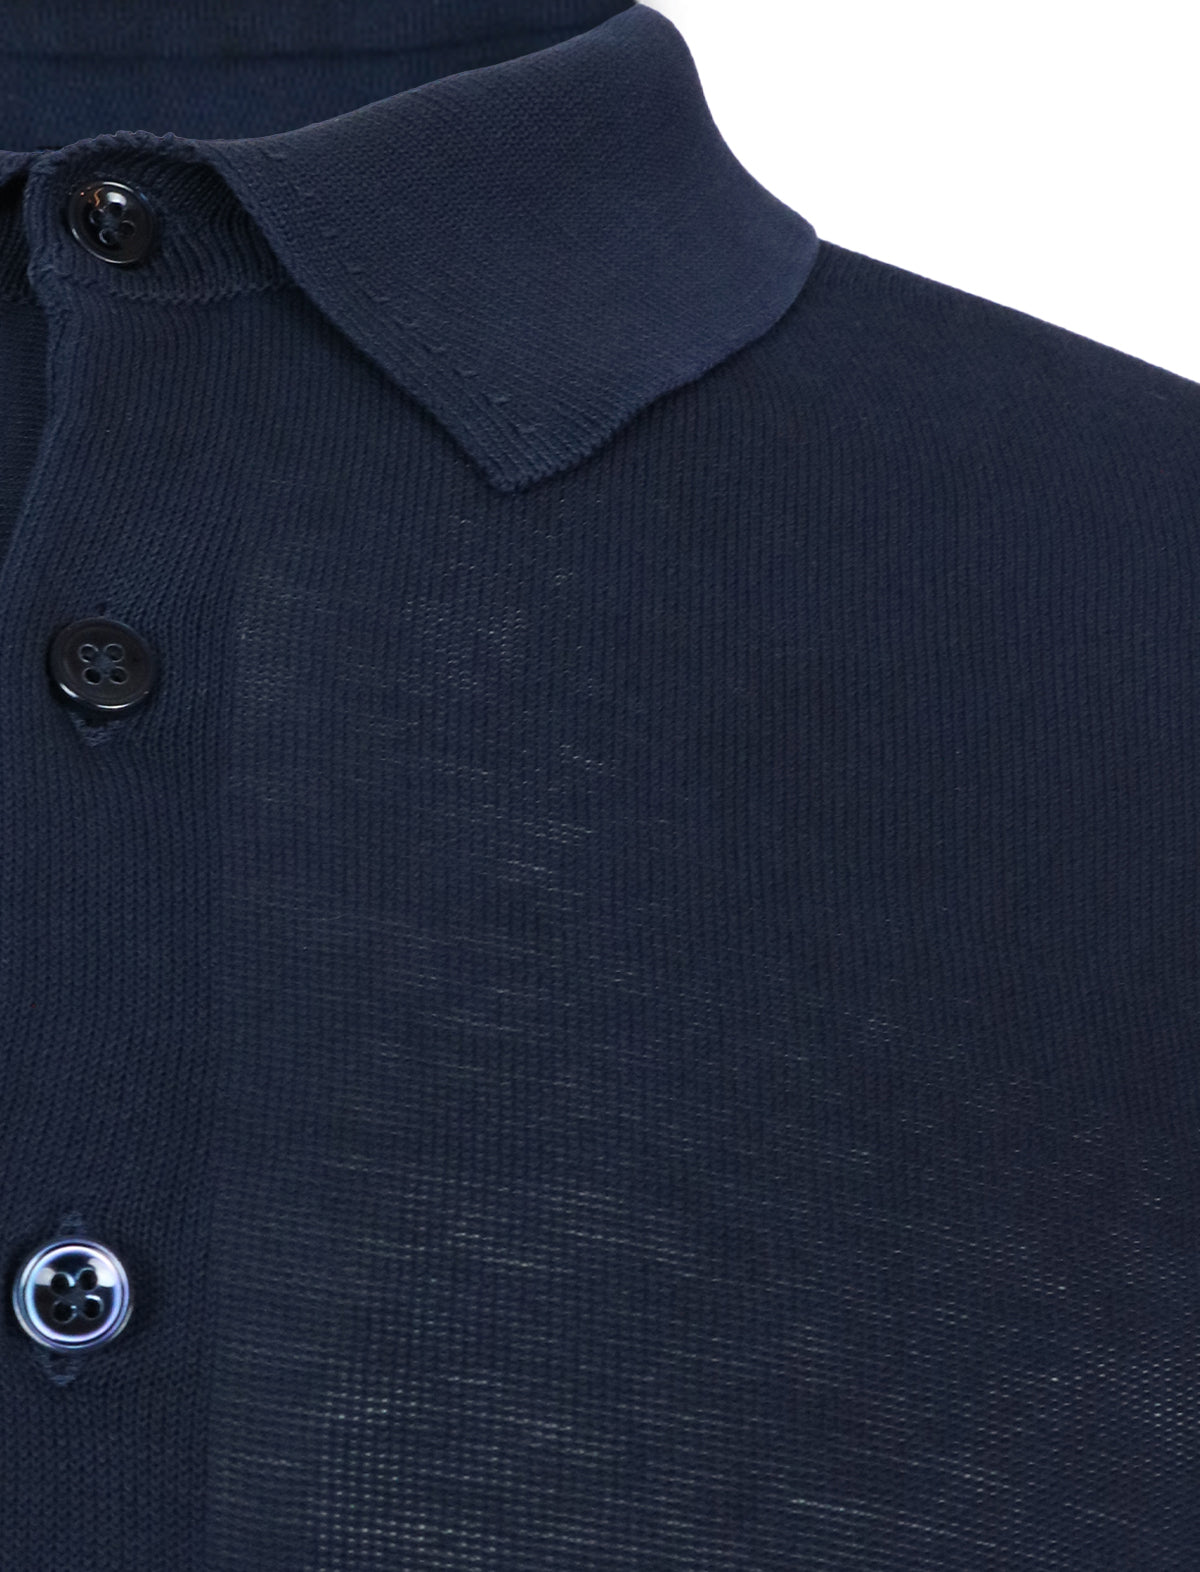 CIRCOLO 1901 Cotton Polo Shirt in Blue Black